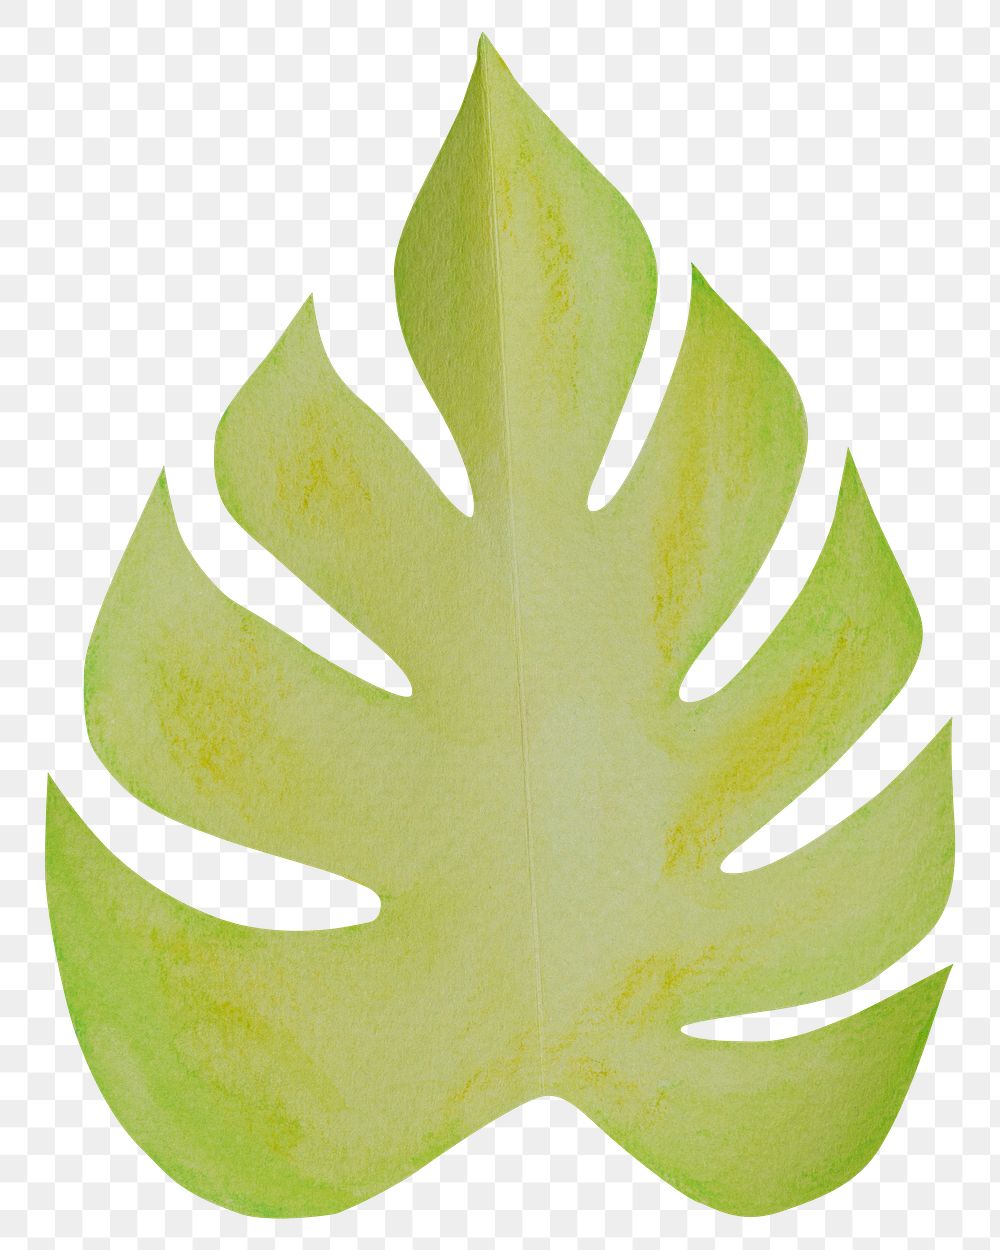 PNG orange leaf, paper craft element, transparent background